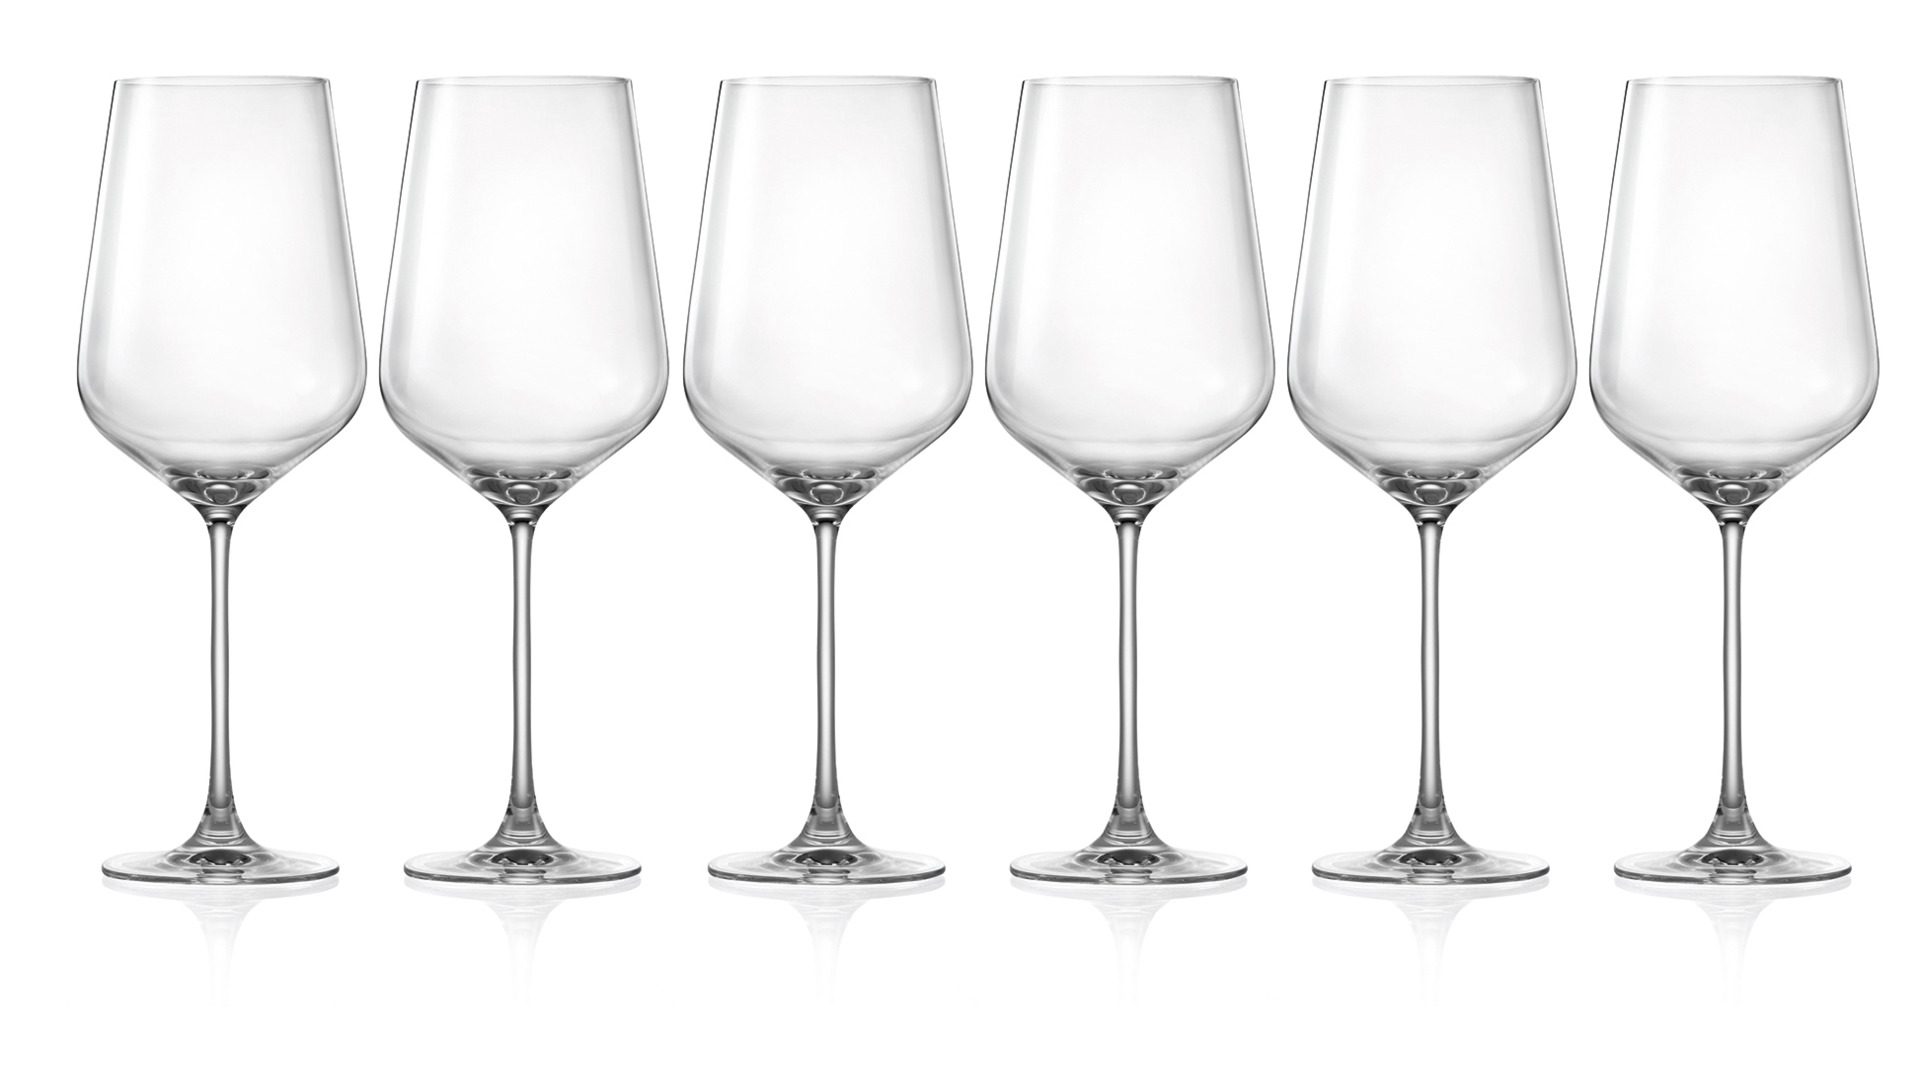 Набор бокалов для красного вина Lucaris Hong Kong 770 мл, 6 шт, стекло хрустальное